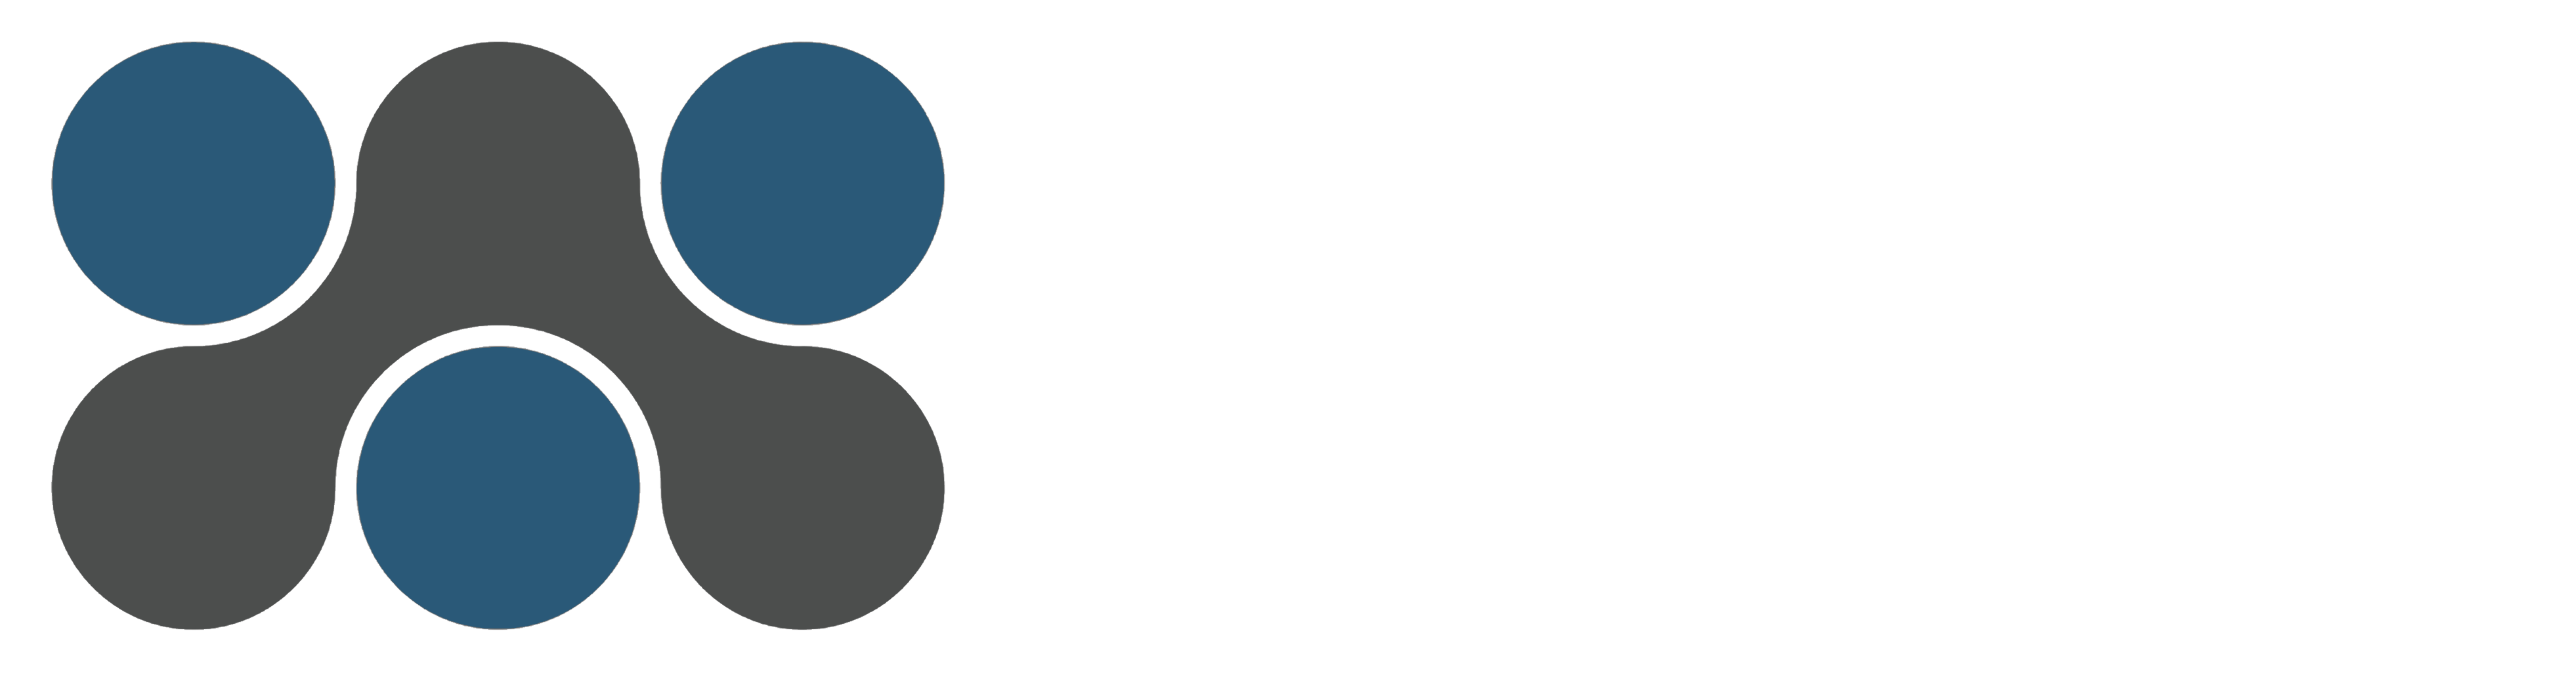 Aggham Design Studio